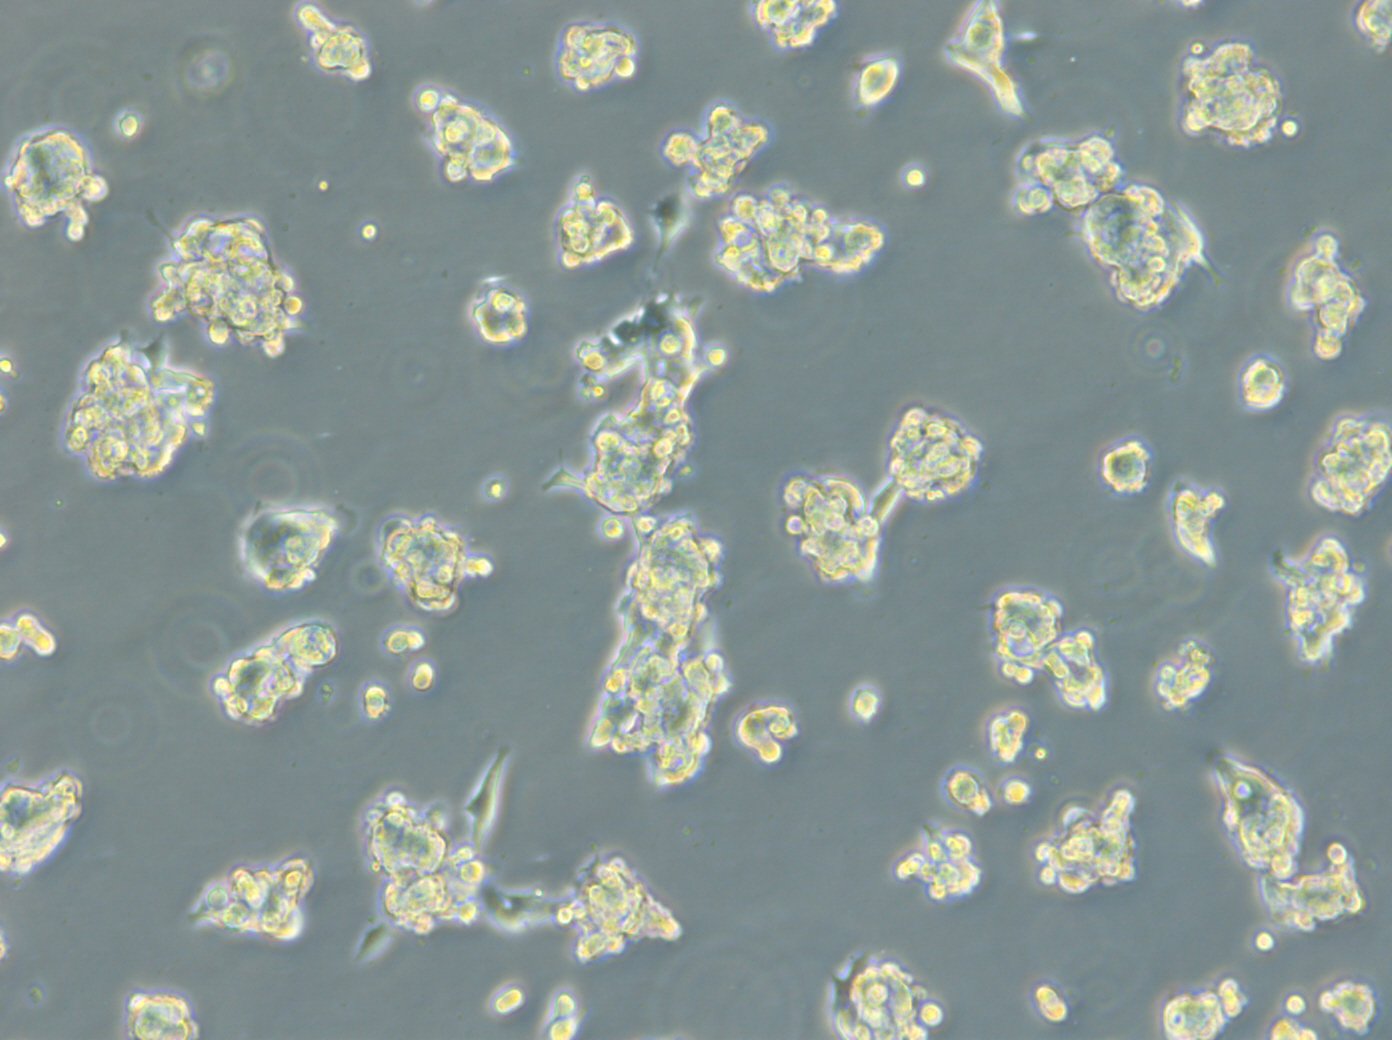 HROC131 T0 M3 Cellules